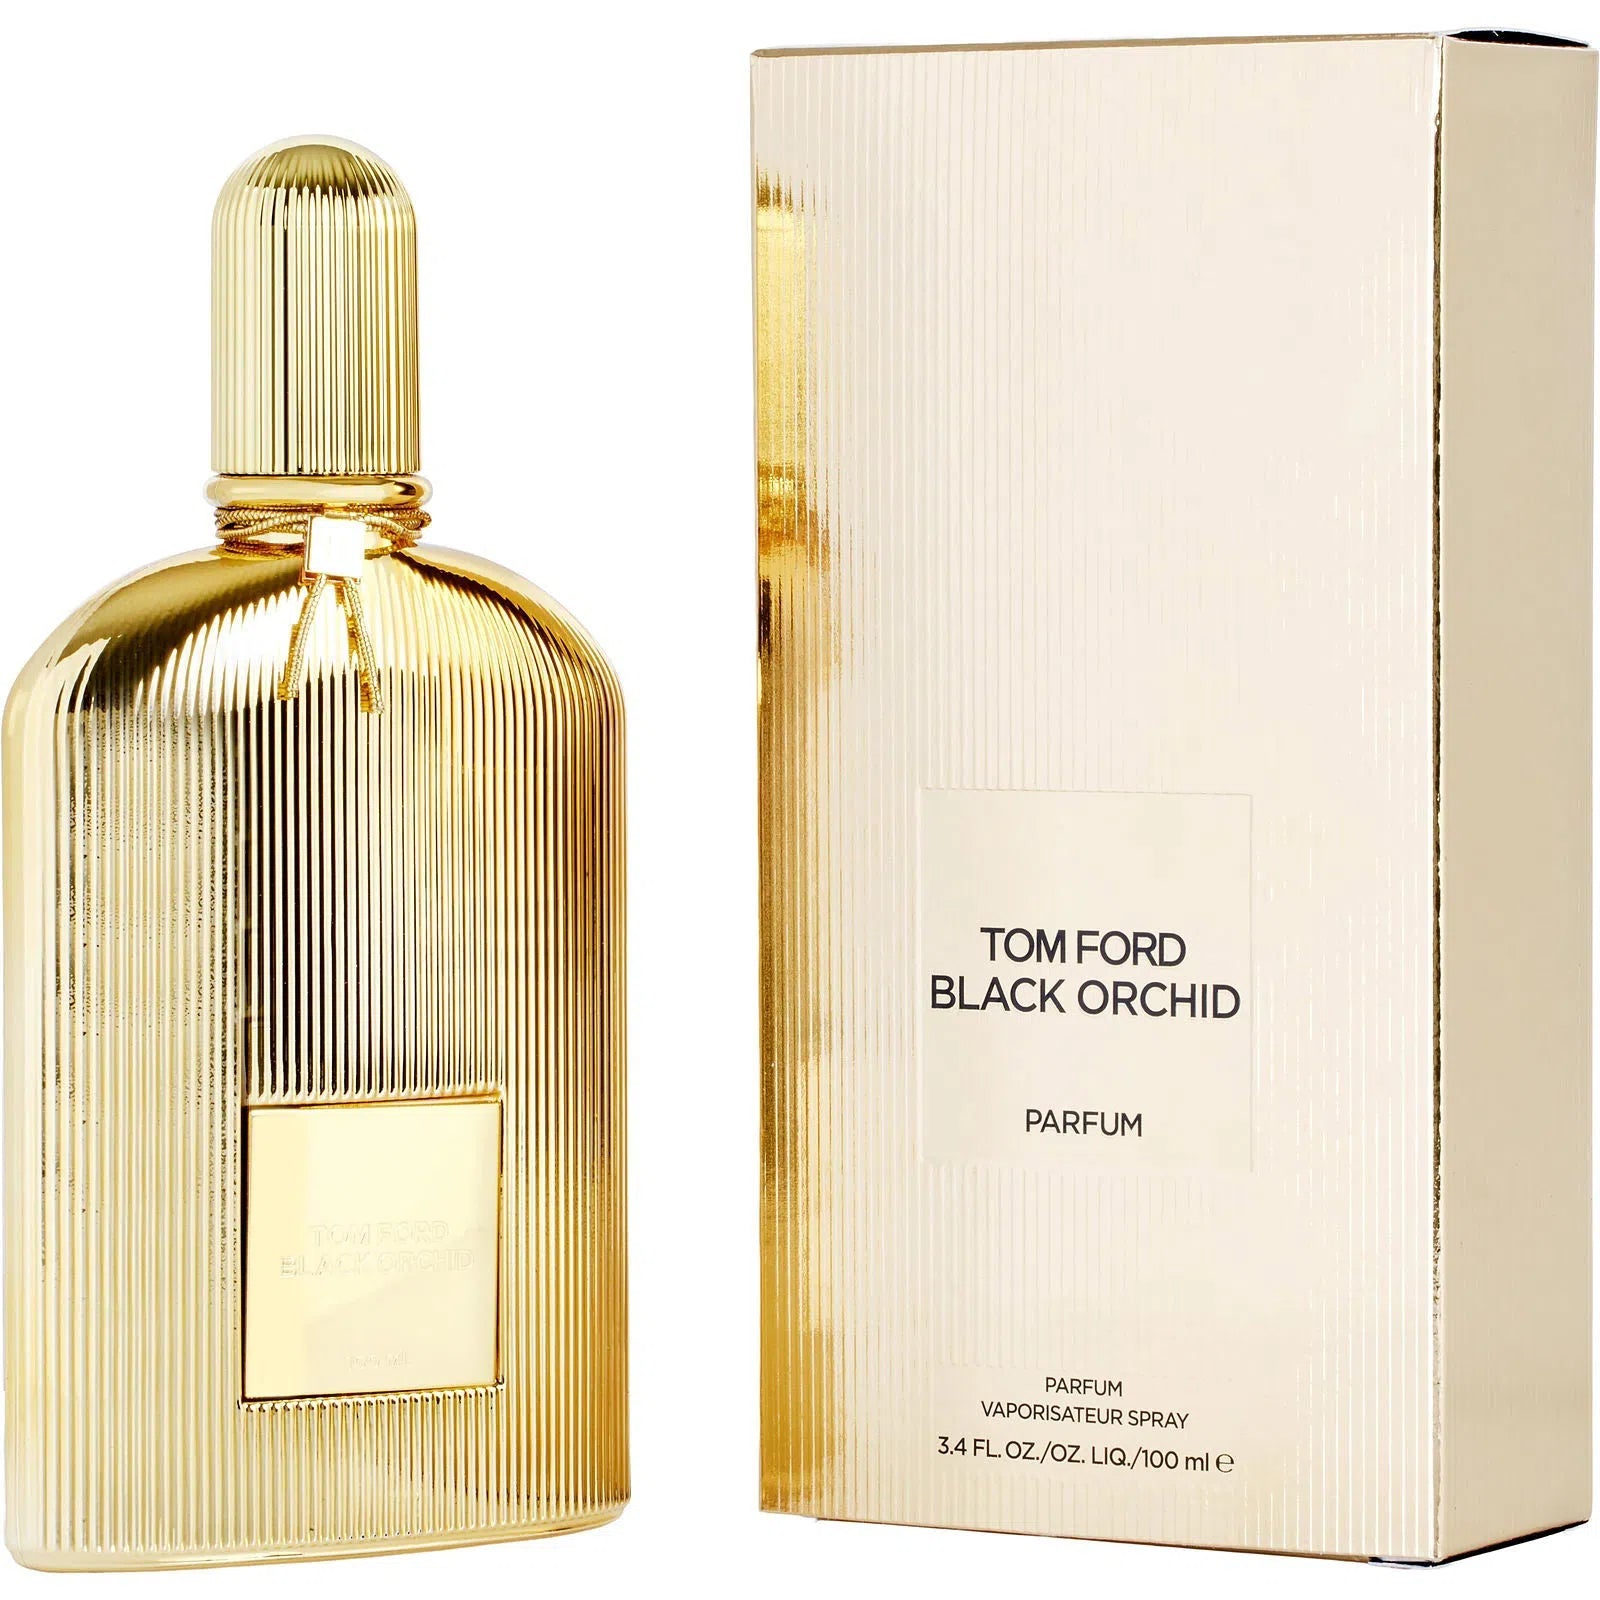 Perfume Tom Ford Black Orchid Parfum (W) / 100 ml - 888066112727- Prive Perfumes Honduras